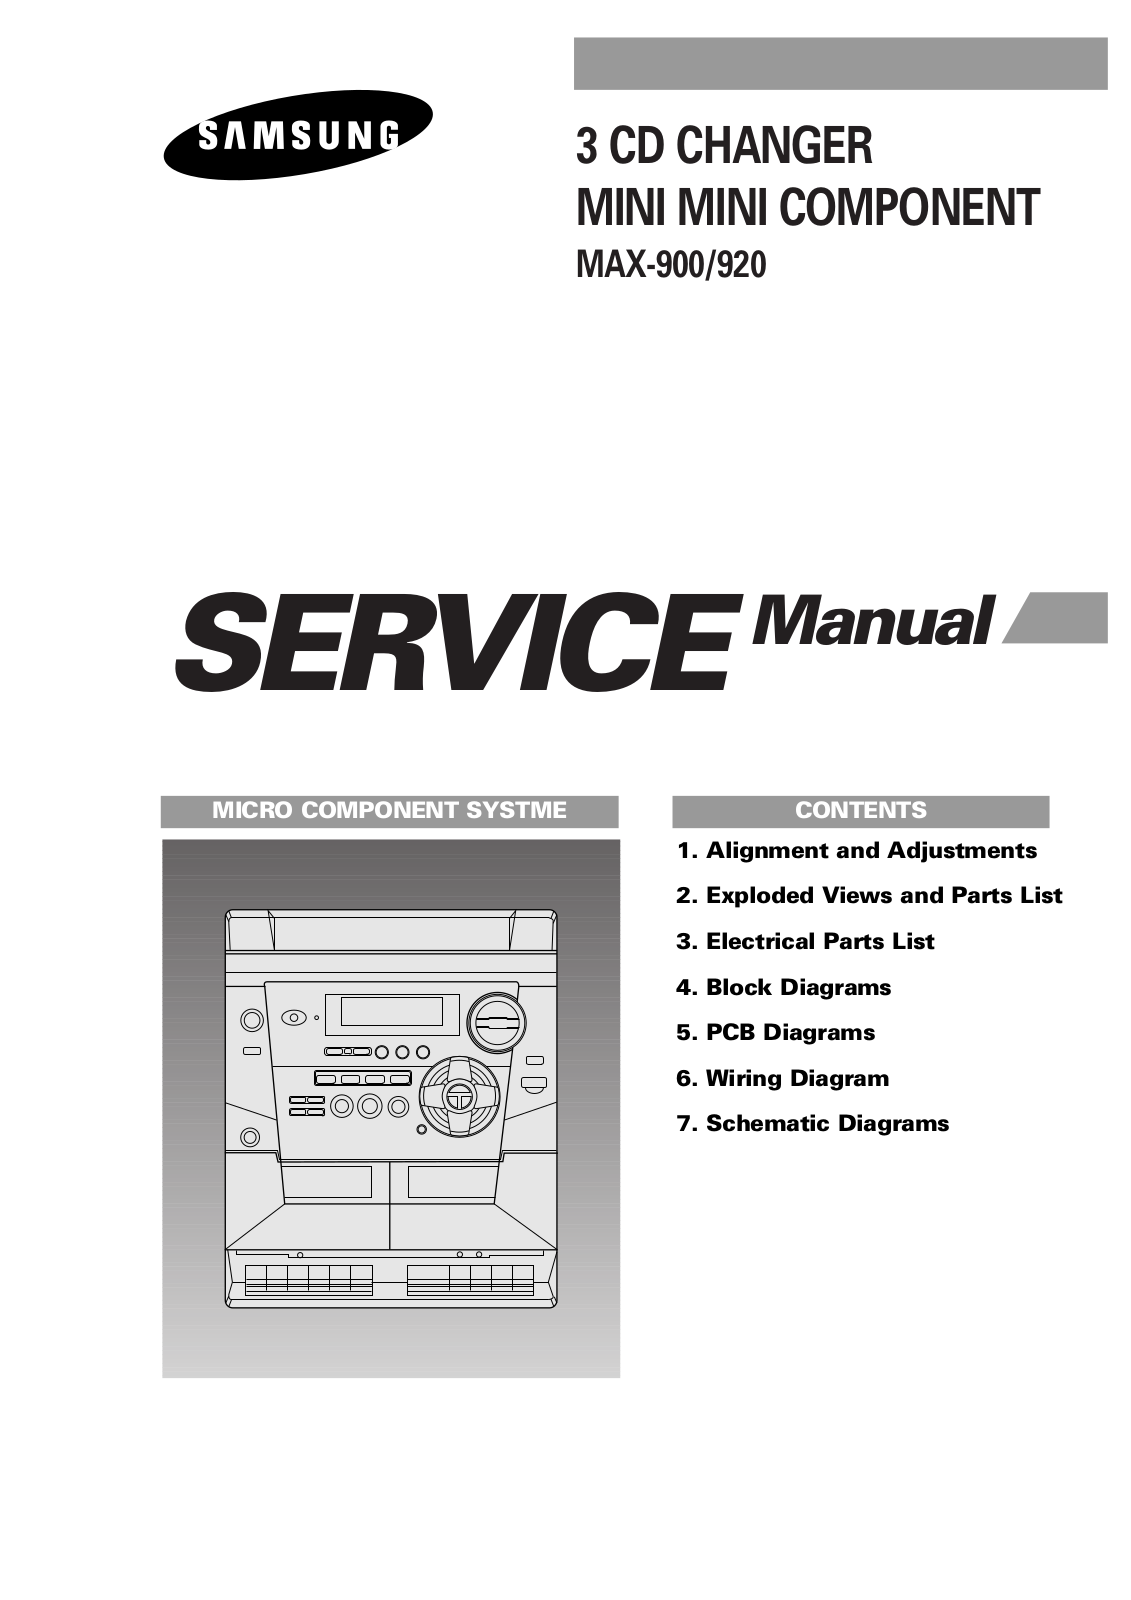 SAMSUNG max920, max900 Service Manual